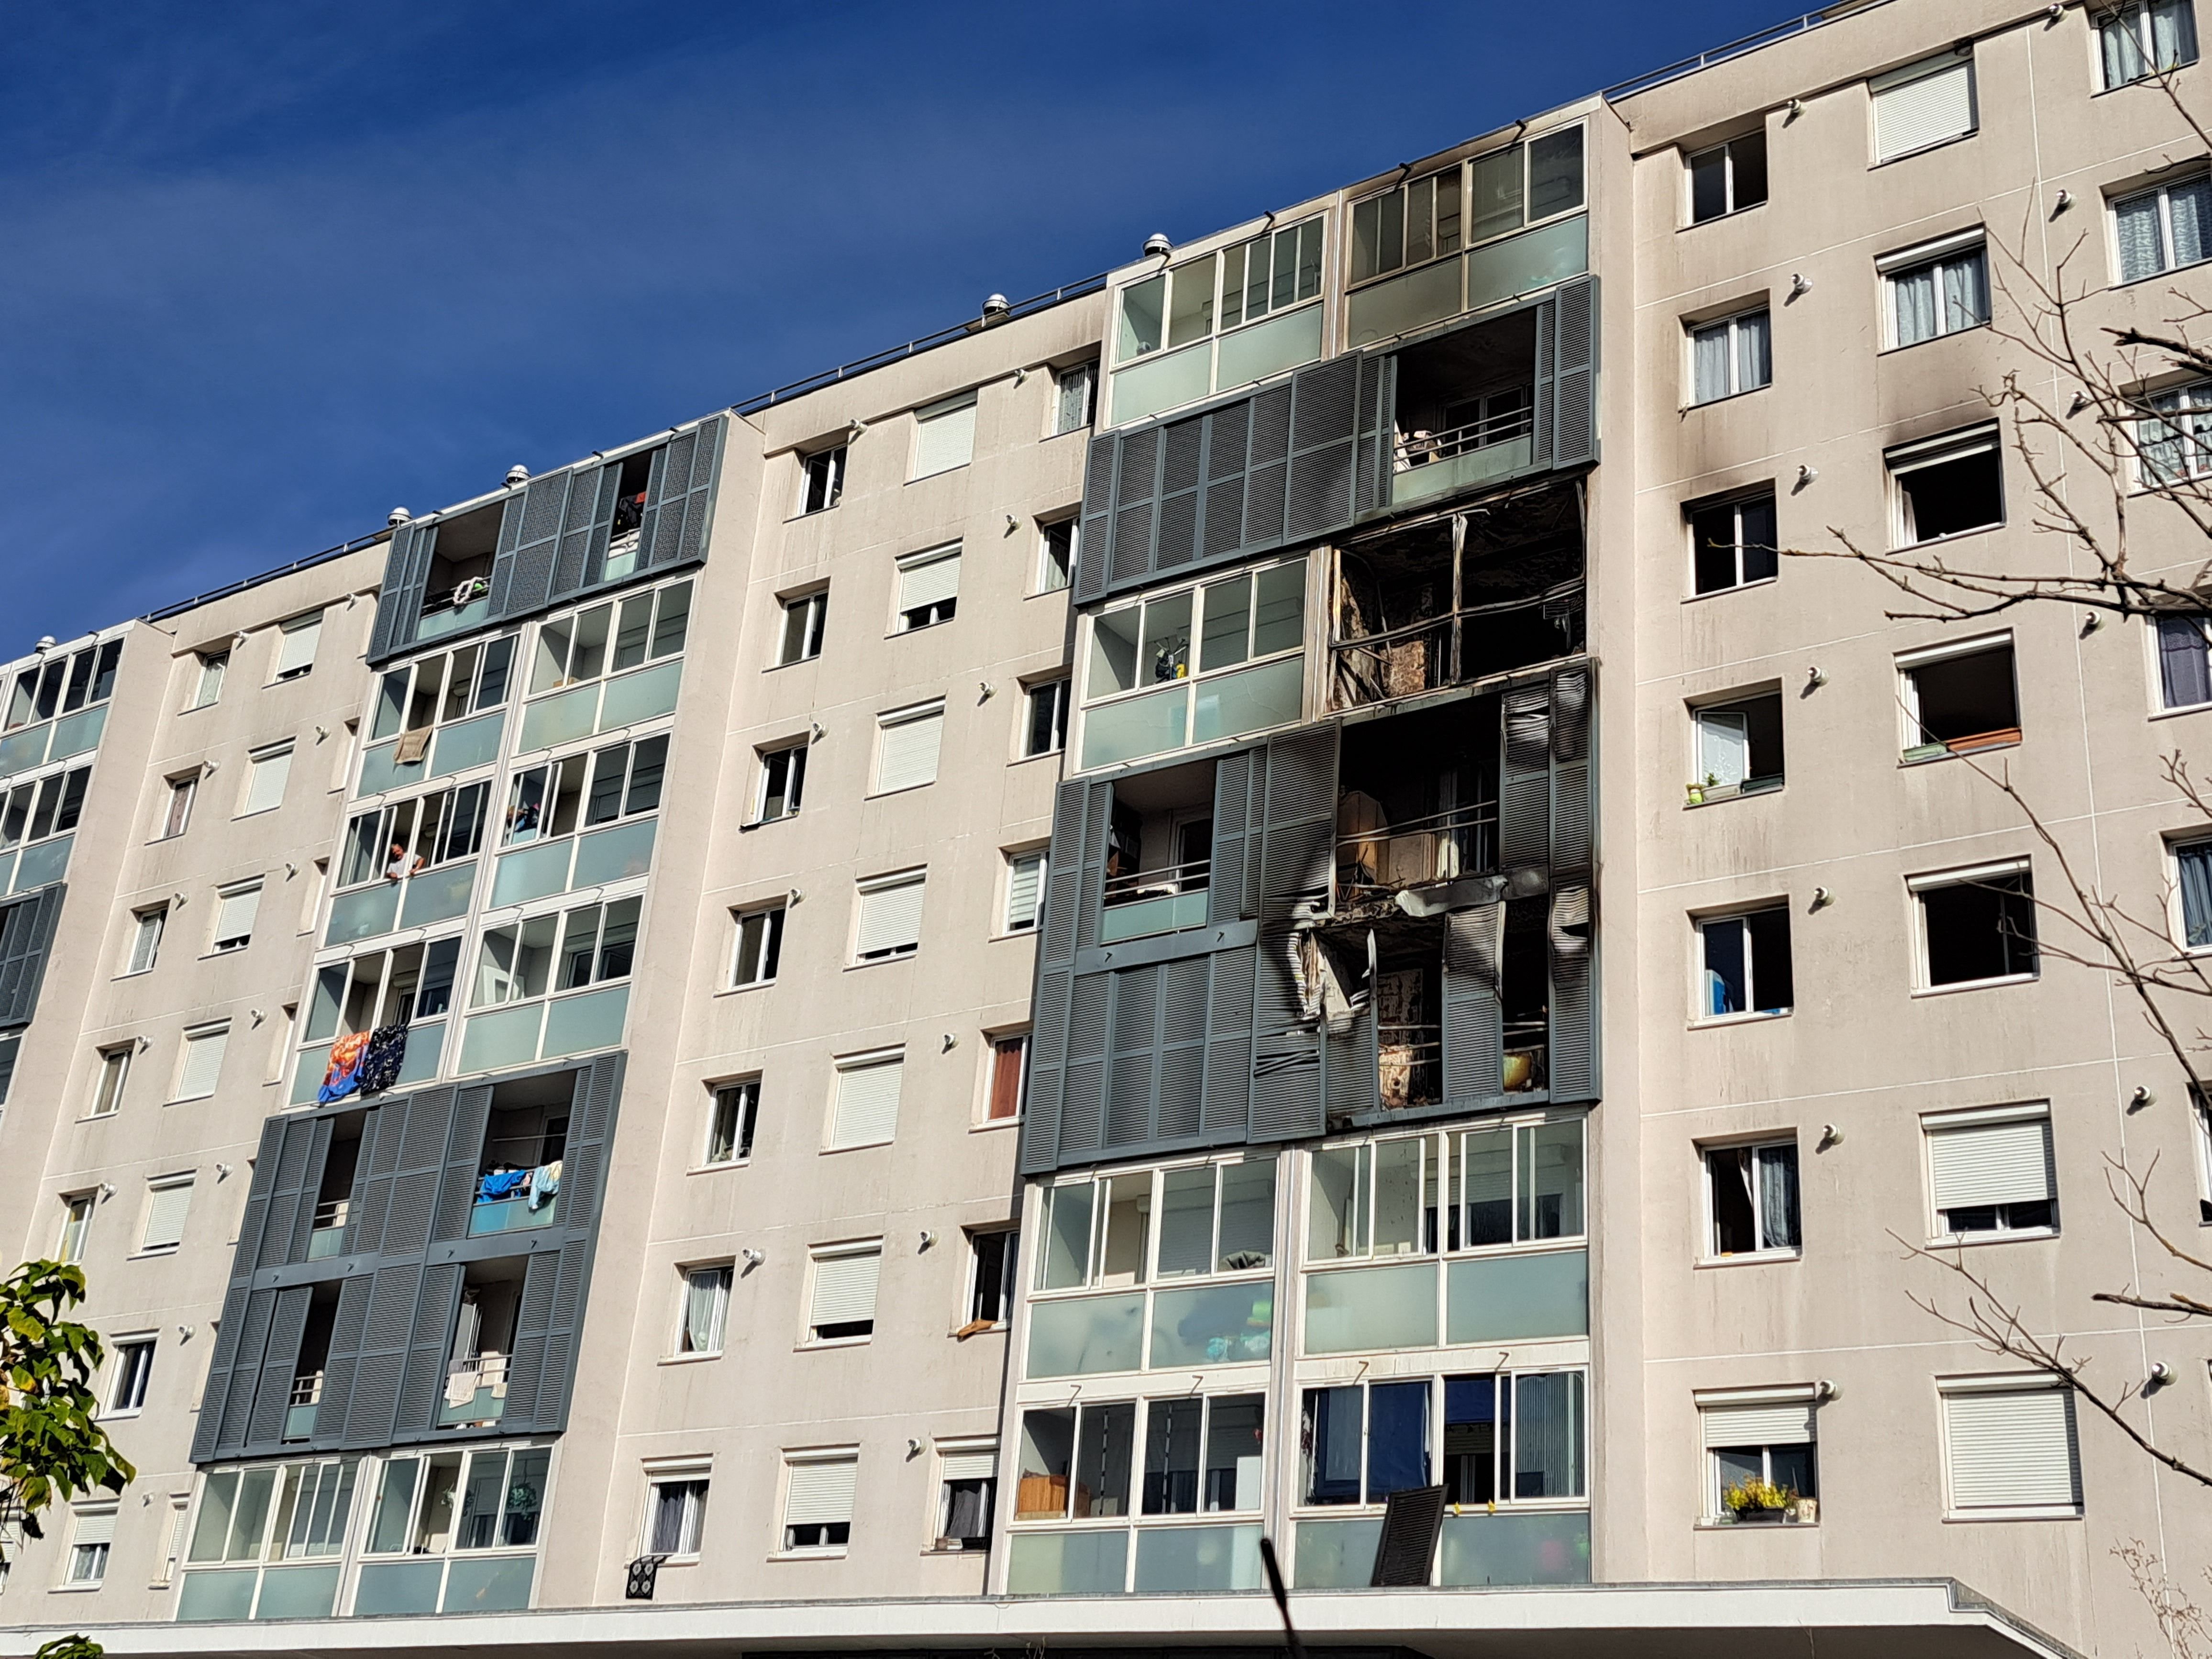 Sainte-Geneviève-des-Bois, le 9 octobre. Les dégâts sont considérables sur l'immeuble du quartier Saint-Hubert. Quatorze personnes se retrouvent sans toit.